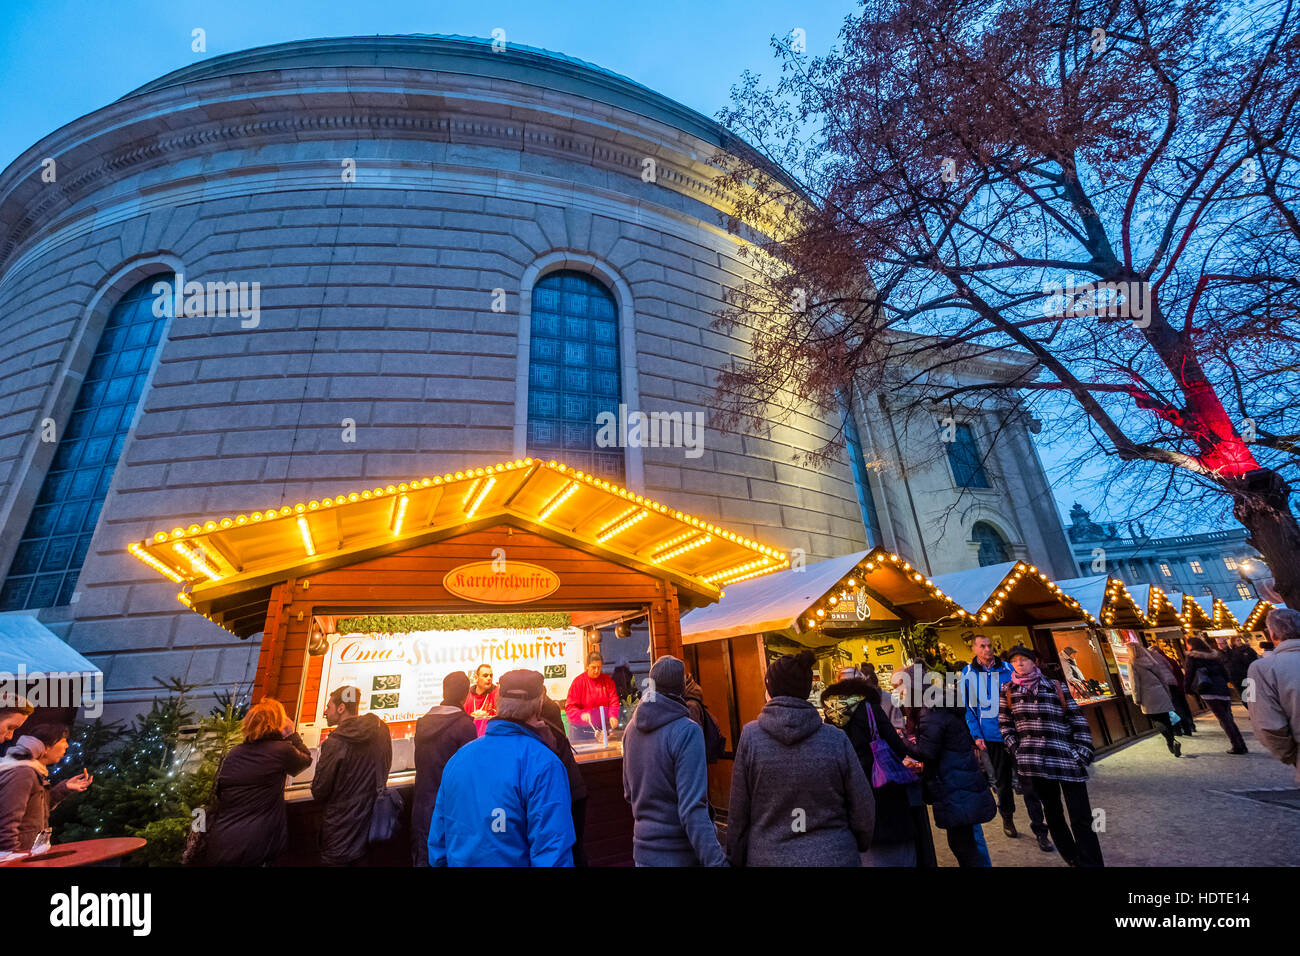 Vue de la nuit de Marché de Noel à la Cathédrale St Hedwig de nuit à Mitte Berlin Allemagne 2016 Banque D'Images